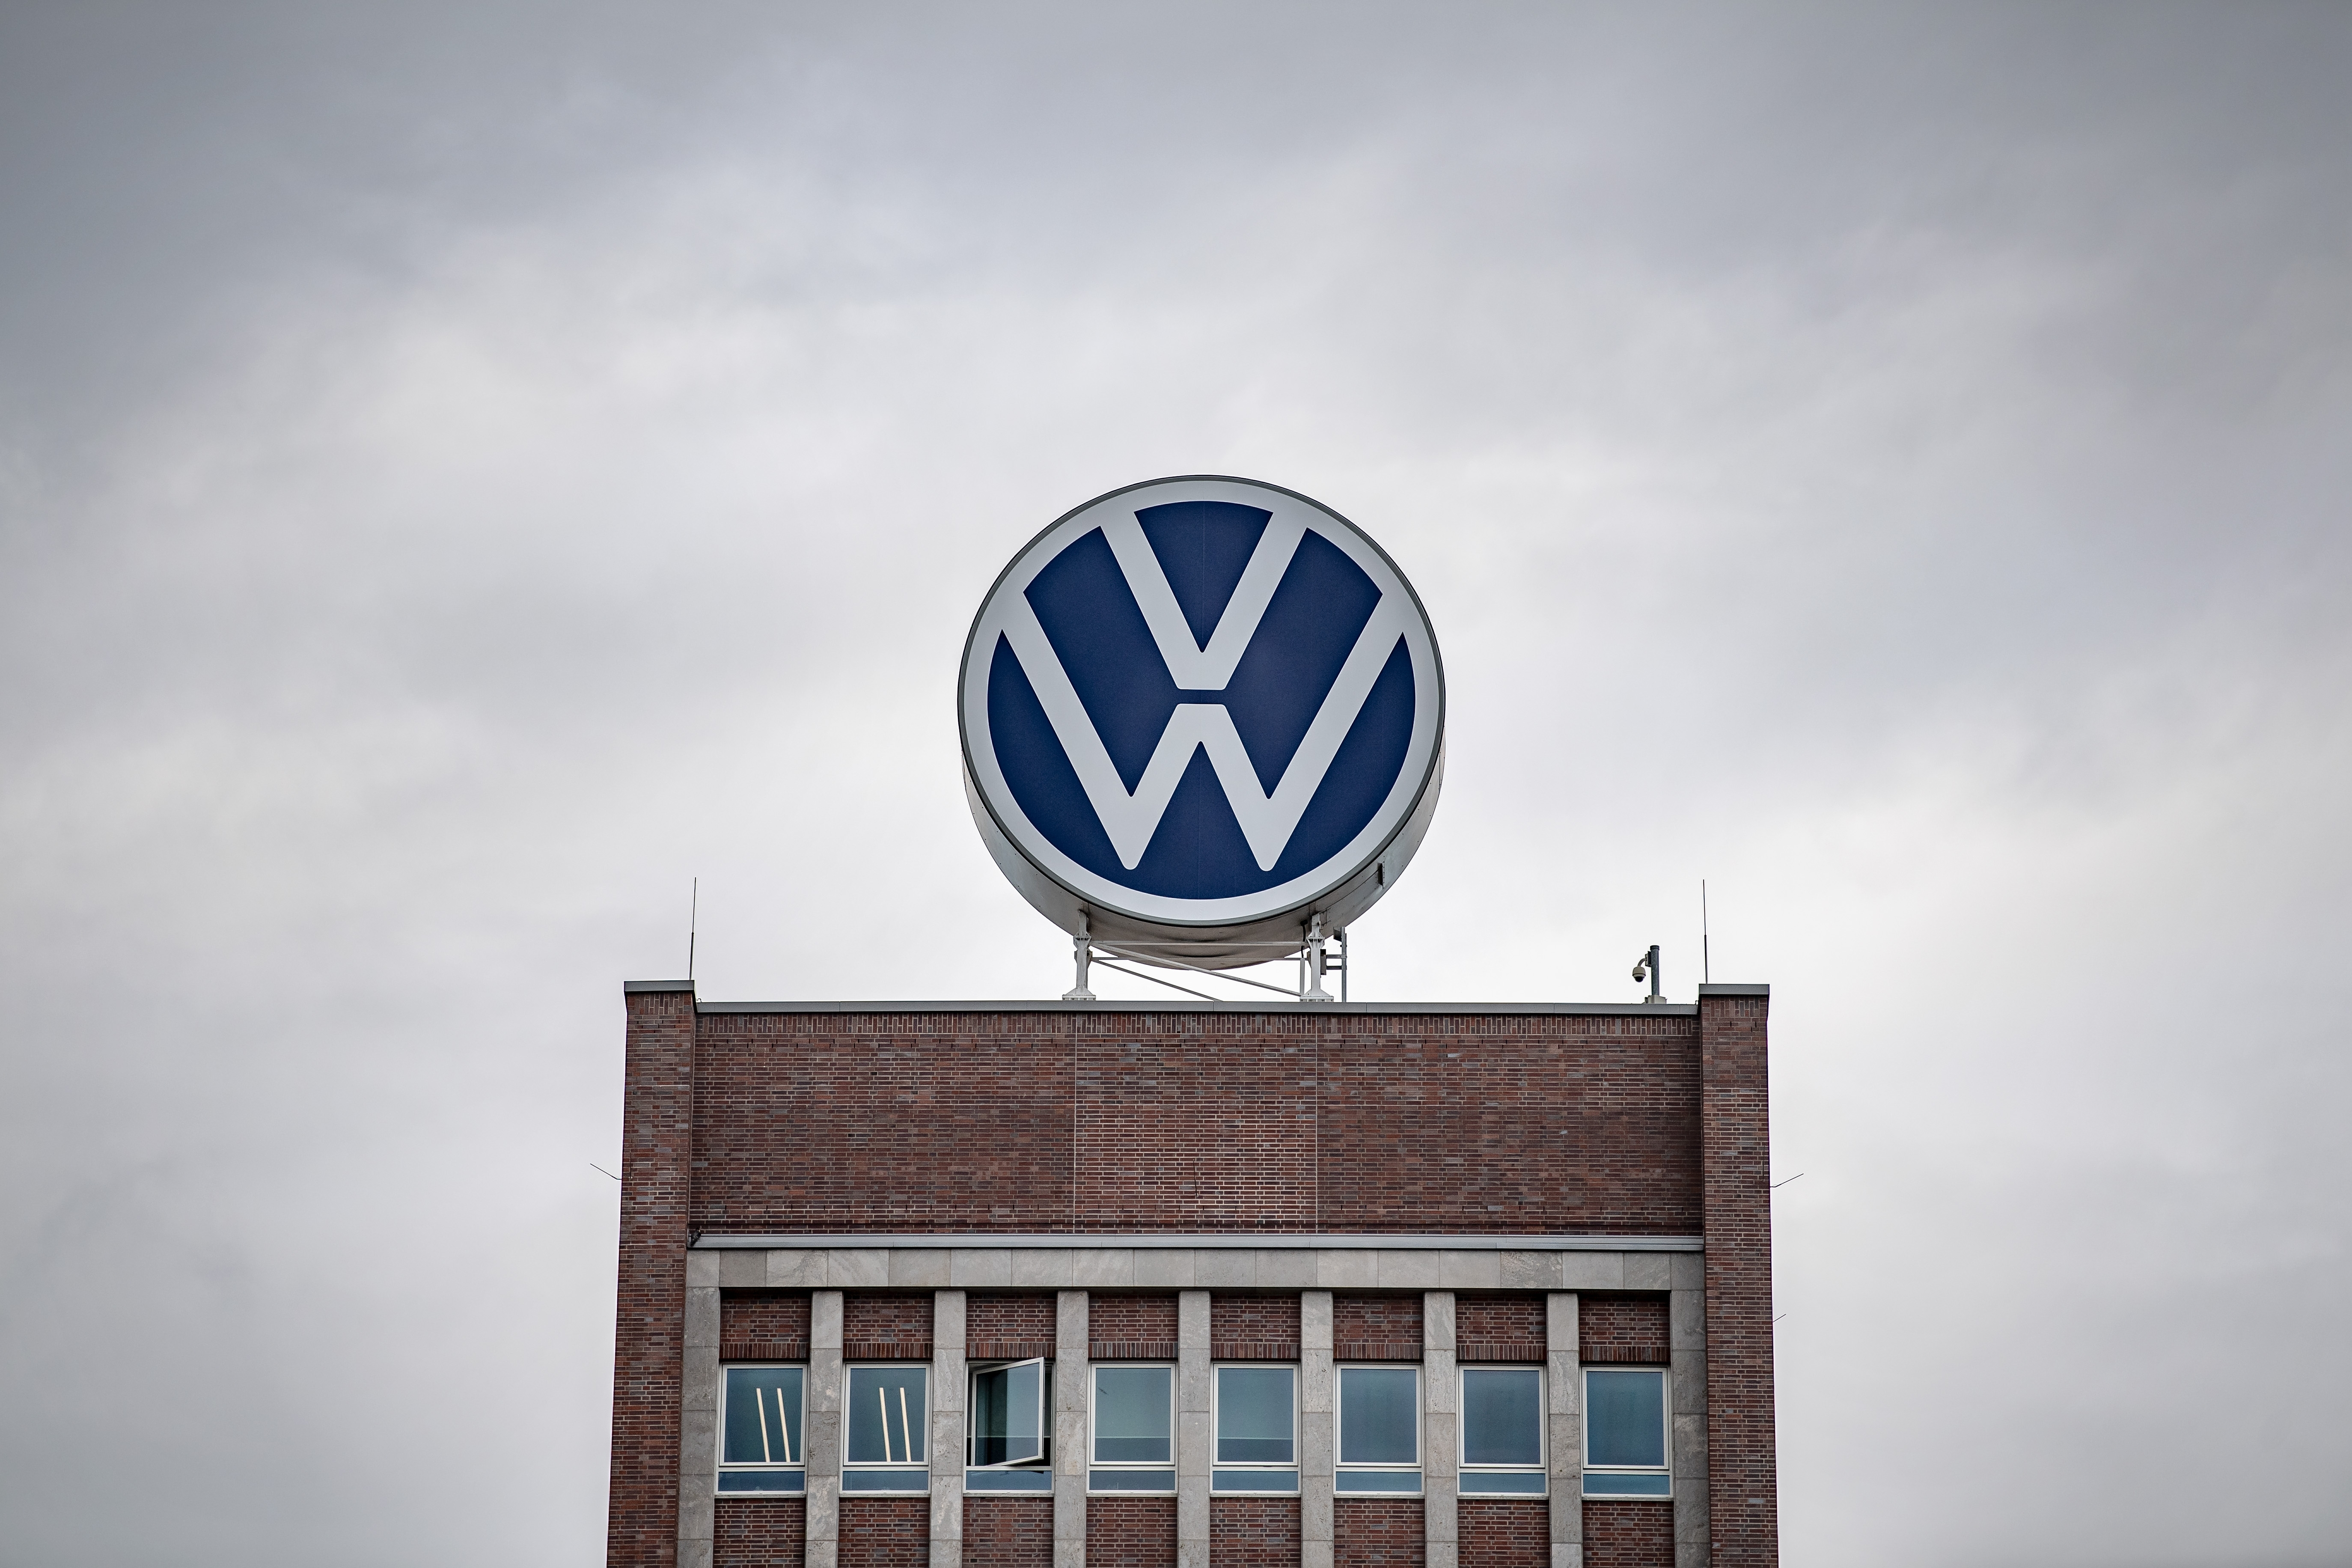 Volkswagen, propietari de Seat o Audi, va vendre 9,23 milions de vehicles el 2023